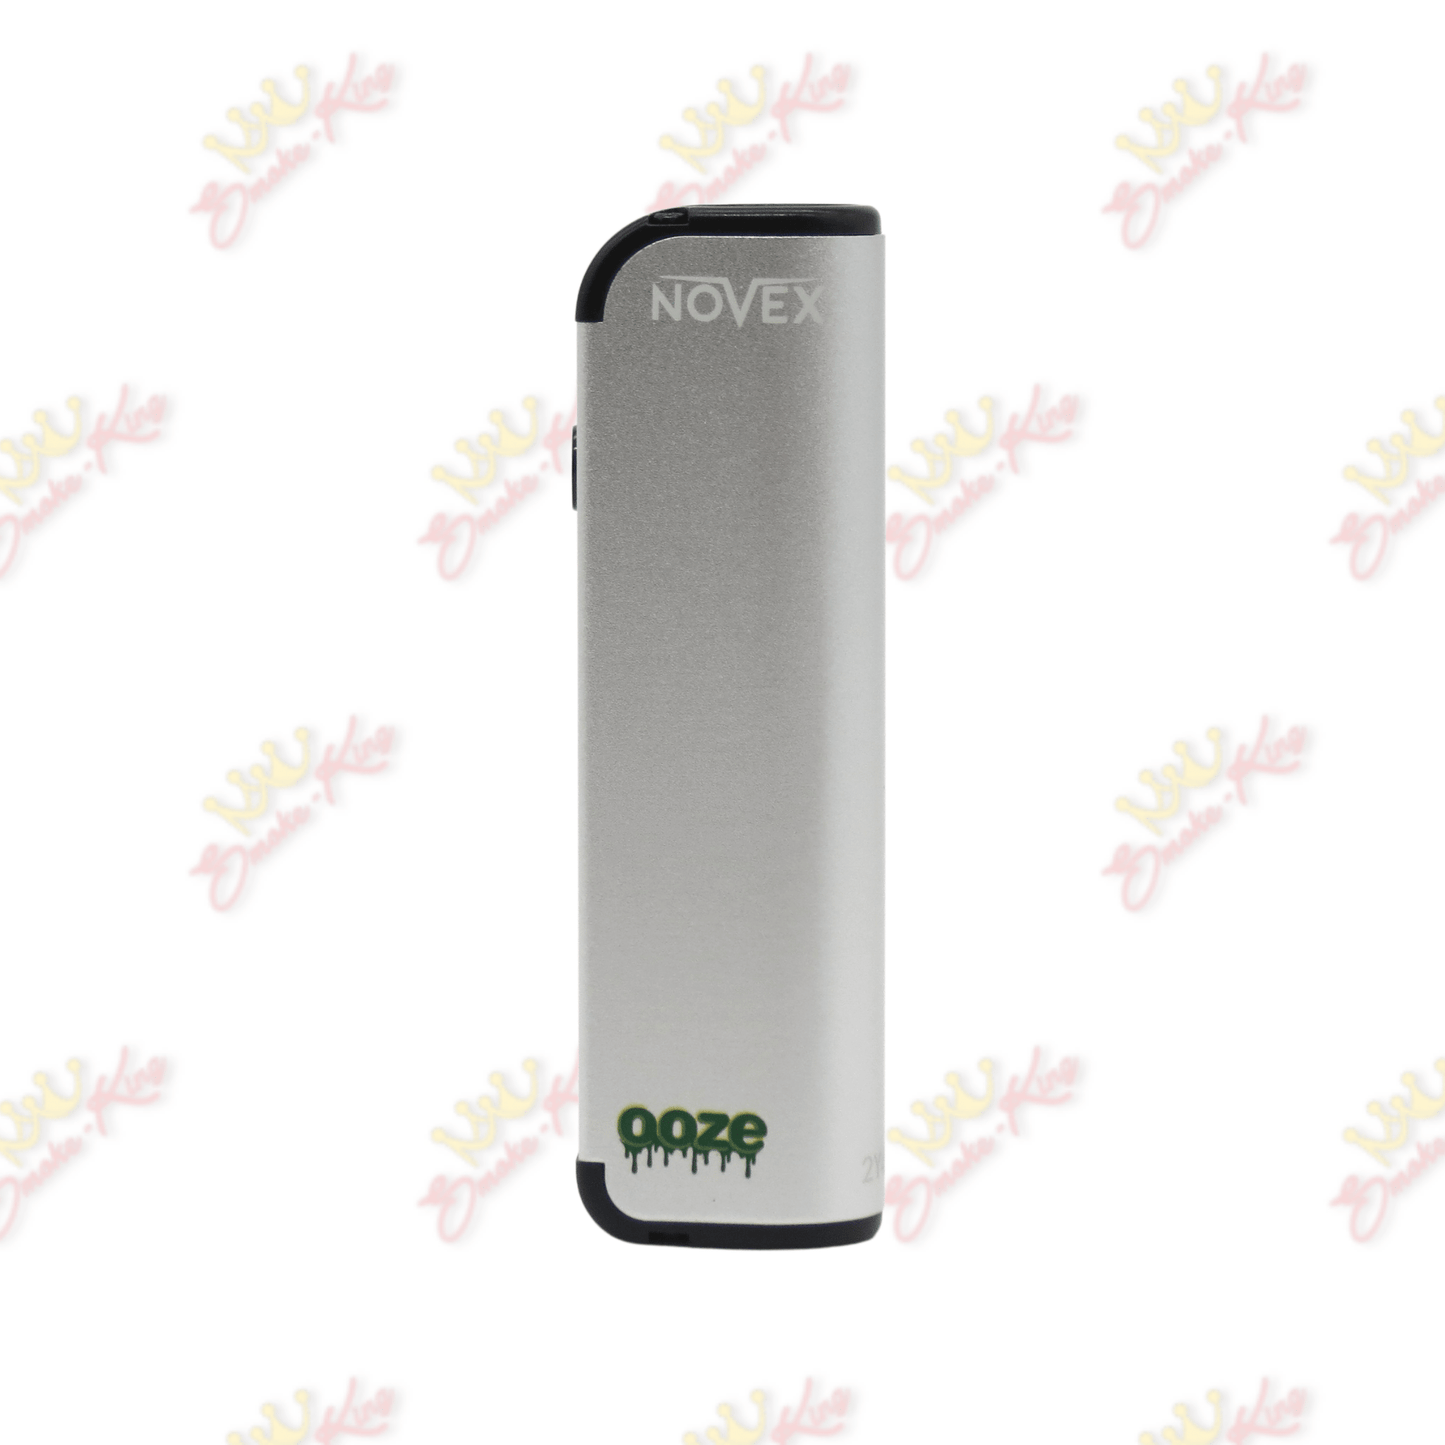 Ooze Silver Ooze Novex Battery Oozed Novex | Cartridge Battery | Smoke King